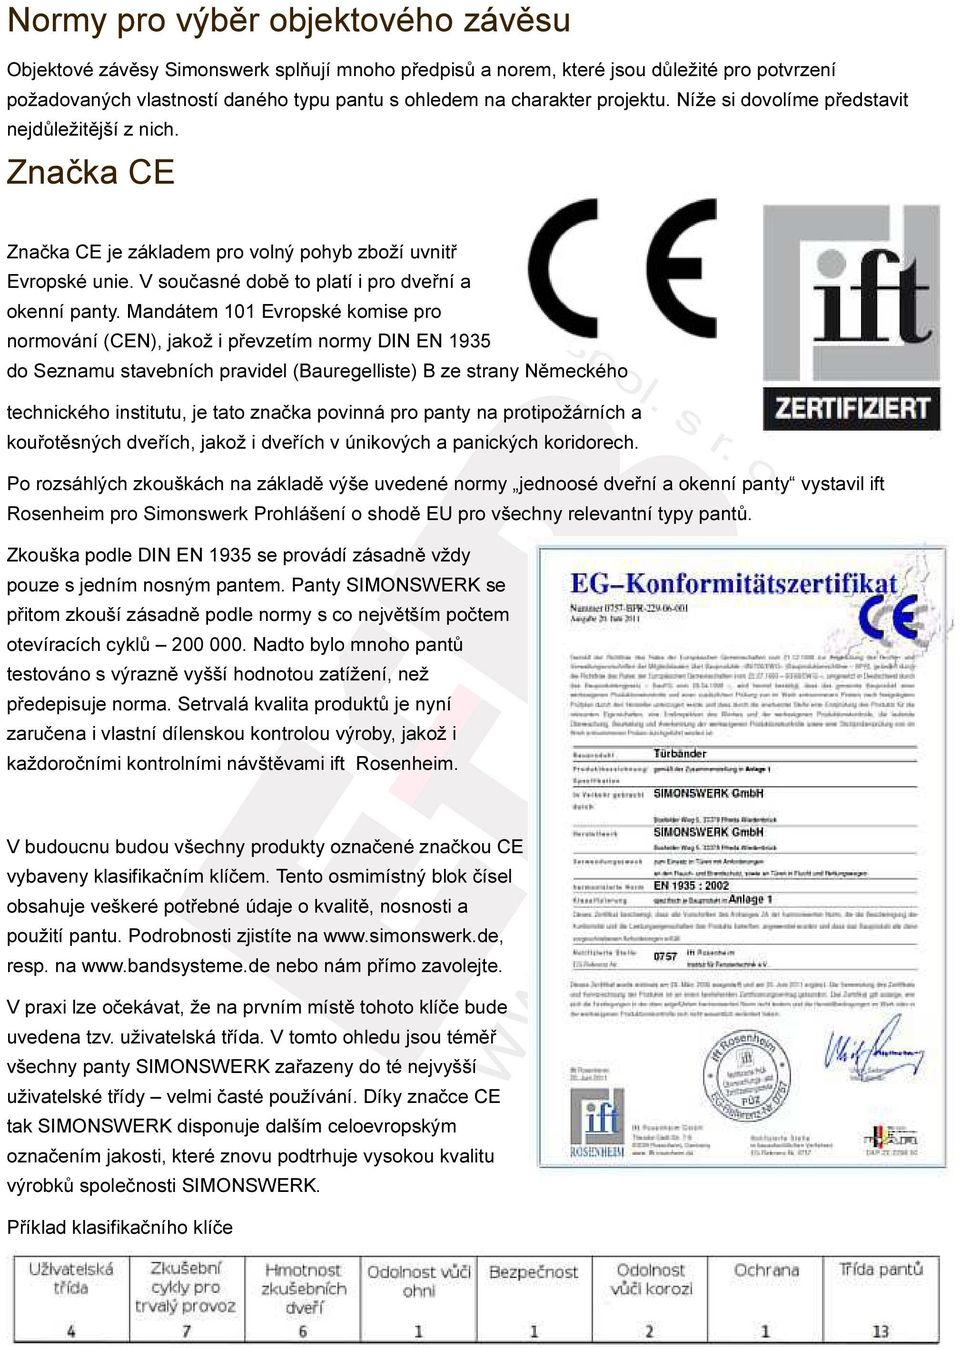 Mandátem 101 Evropské komise pro normování (CEN), jakož i převzetím normy DIN EN 1935 do Seznamu stavebních pravidel (Bauregelliste) B ze strany Německého technického institutu, je tato značka